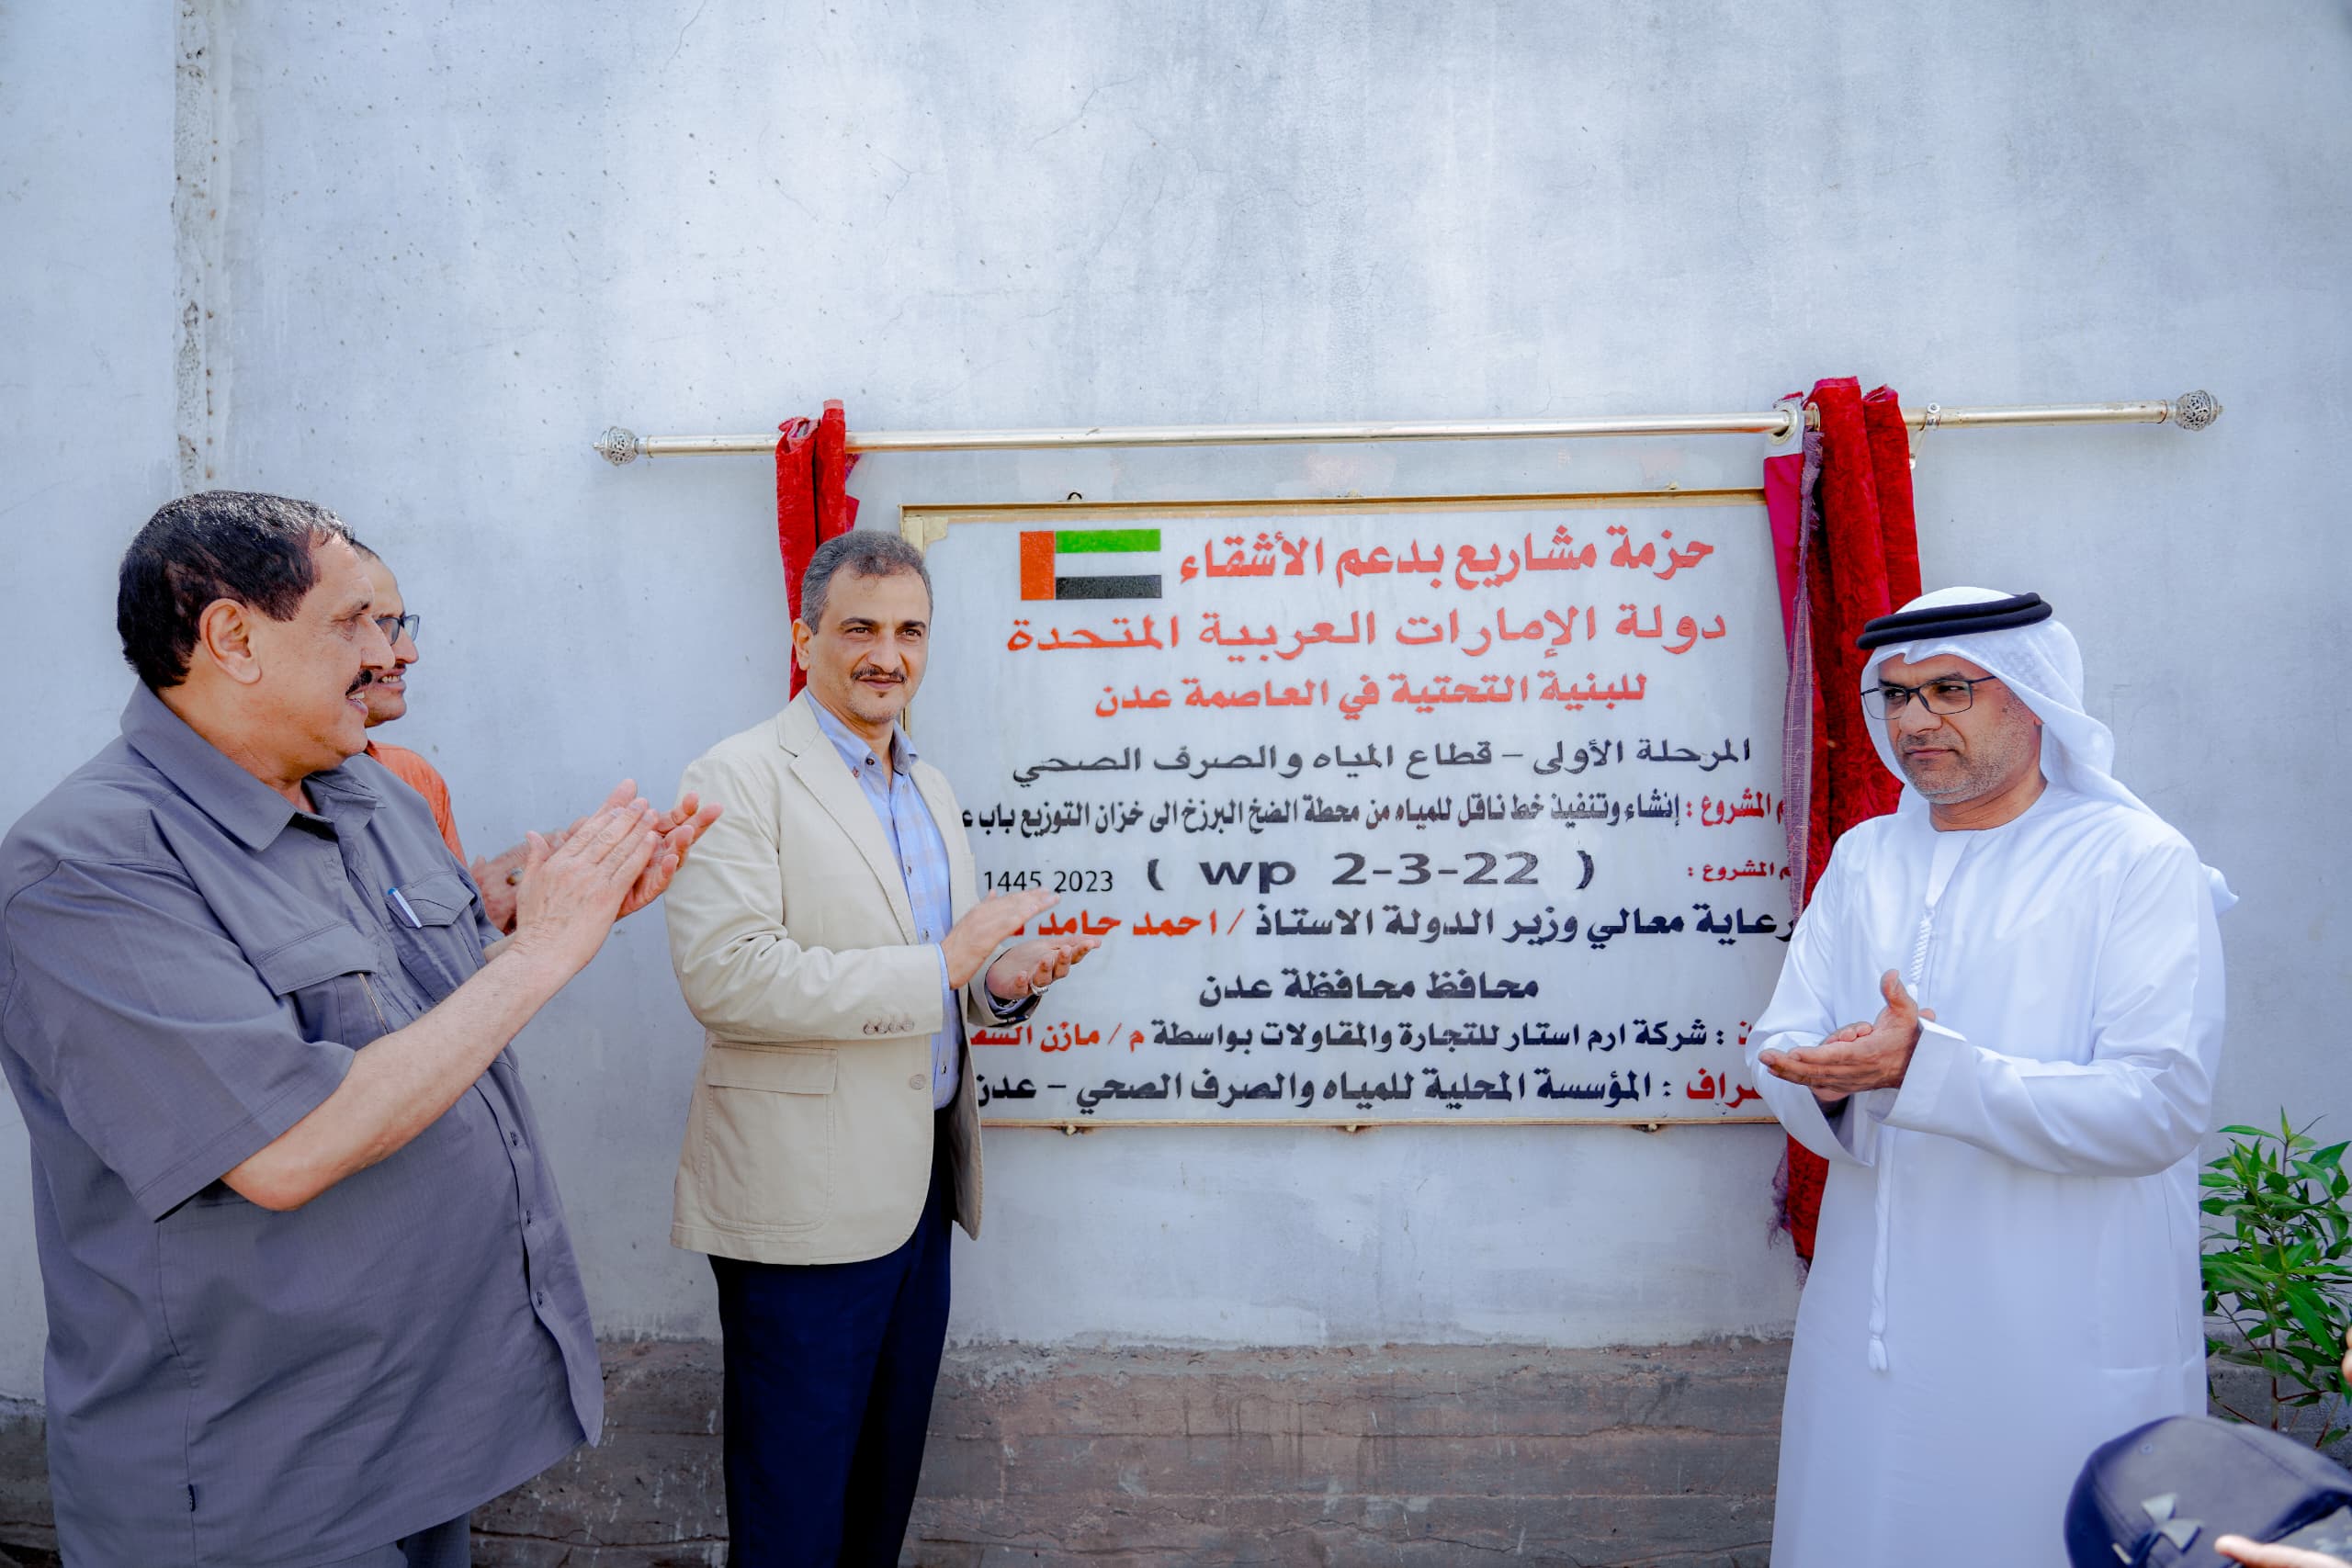 افتتاح المرحلة الأولى من مشاريع تأهيل البنية التحتية لمؤسسة مياه عدن ومركز شرطة البريقة بدعم إماراتي